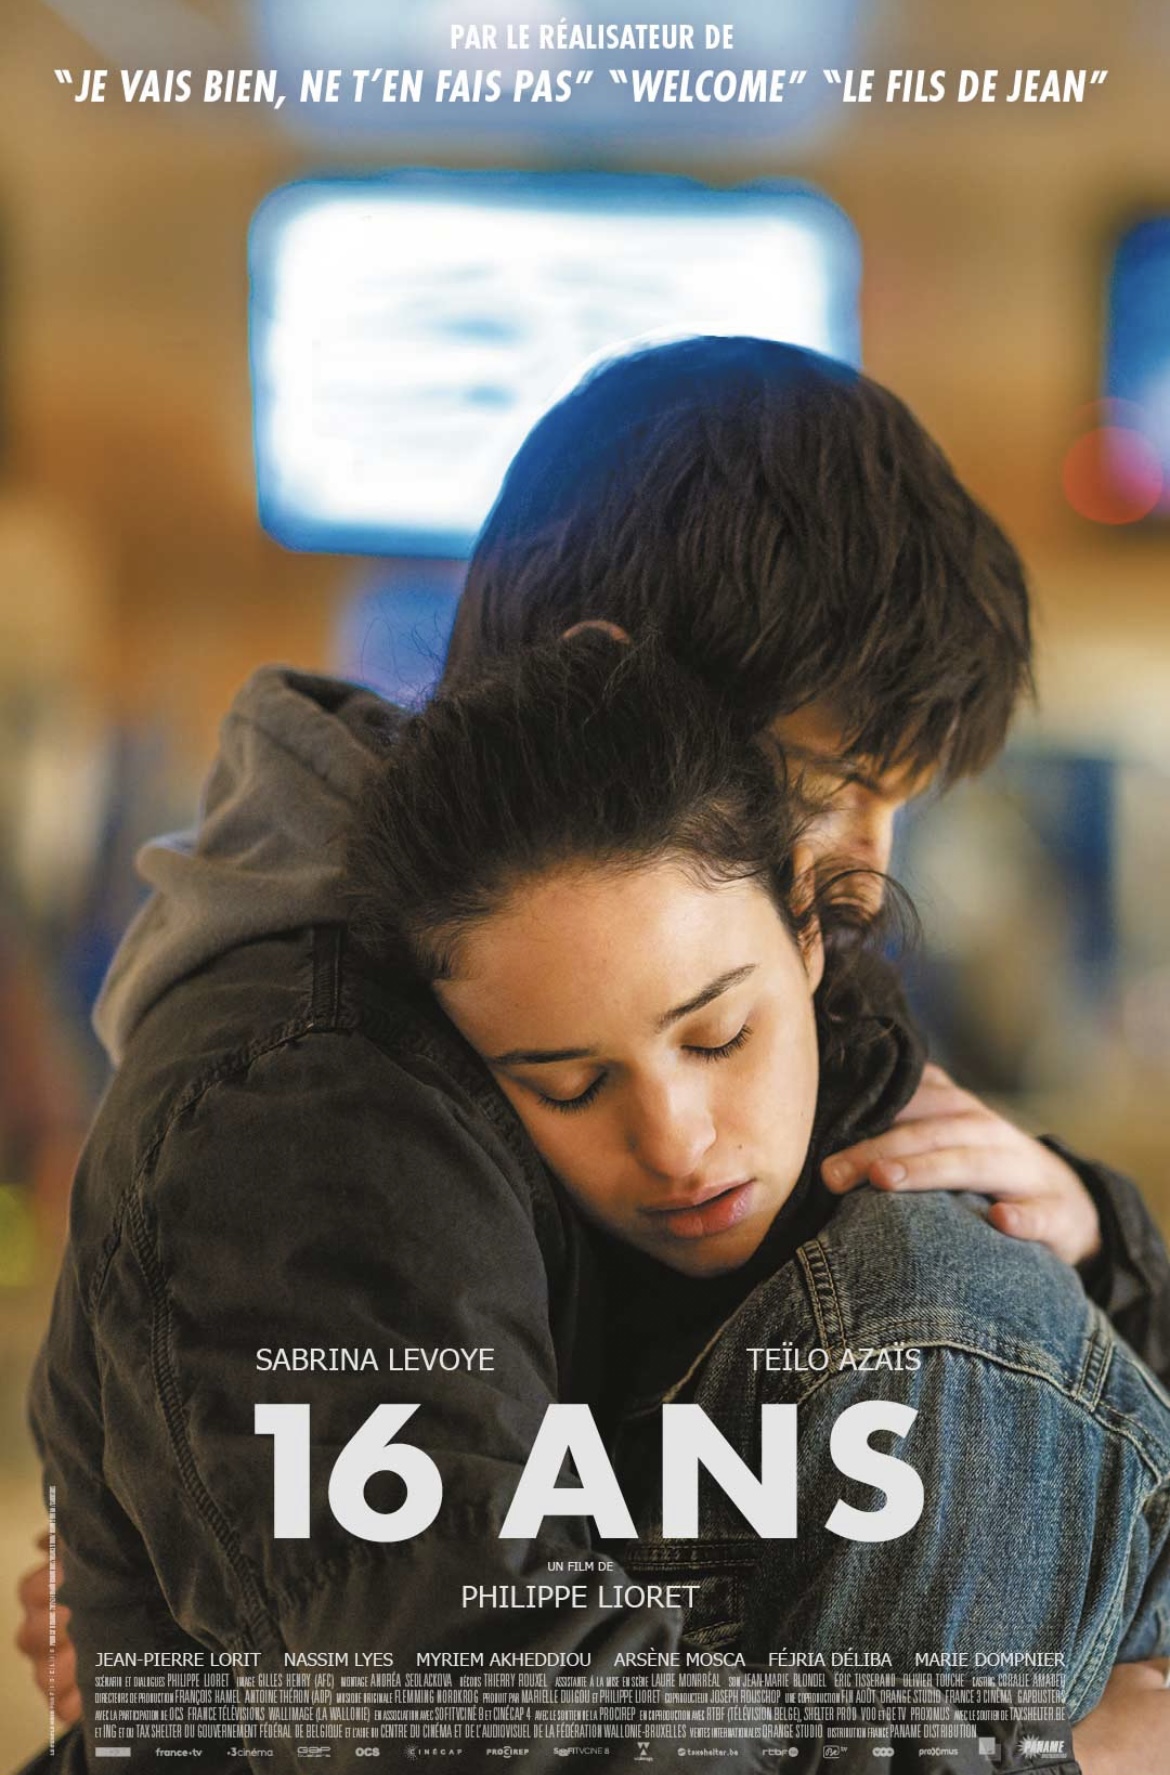 Rôle de Nora dans le film "16 ANS" de Philippe Lioret.